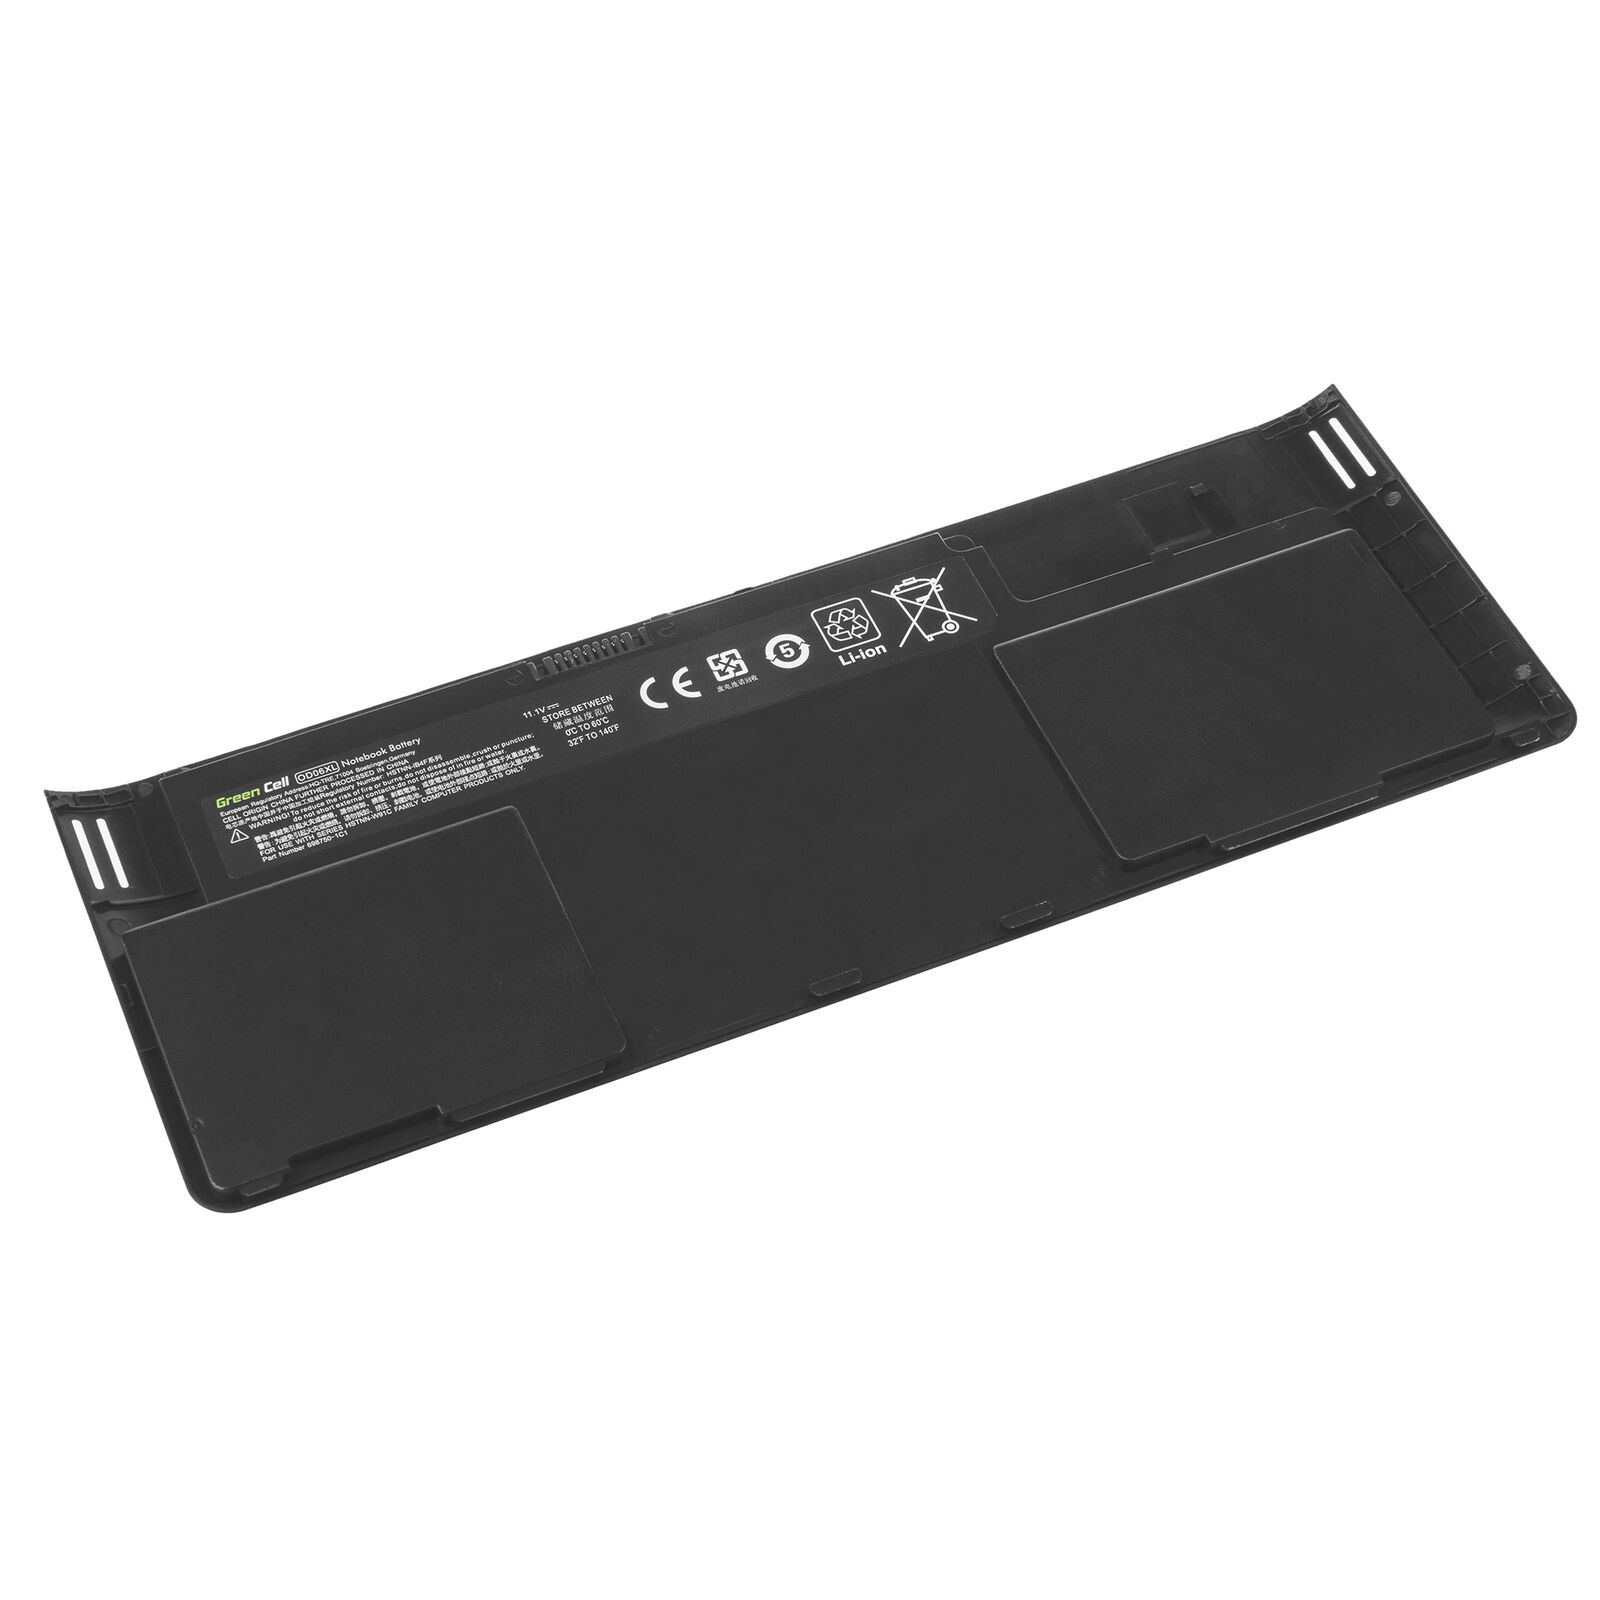 Batteri til HP Revolve 810, Tablet PC, H6L25AA, OD06XL HSTNN-IB4F (kompatibelt)